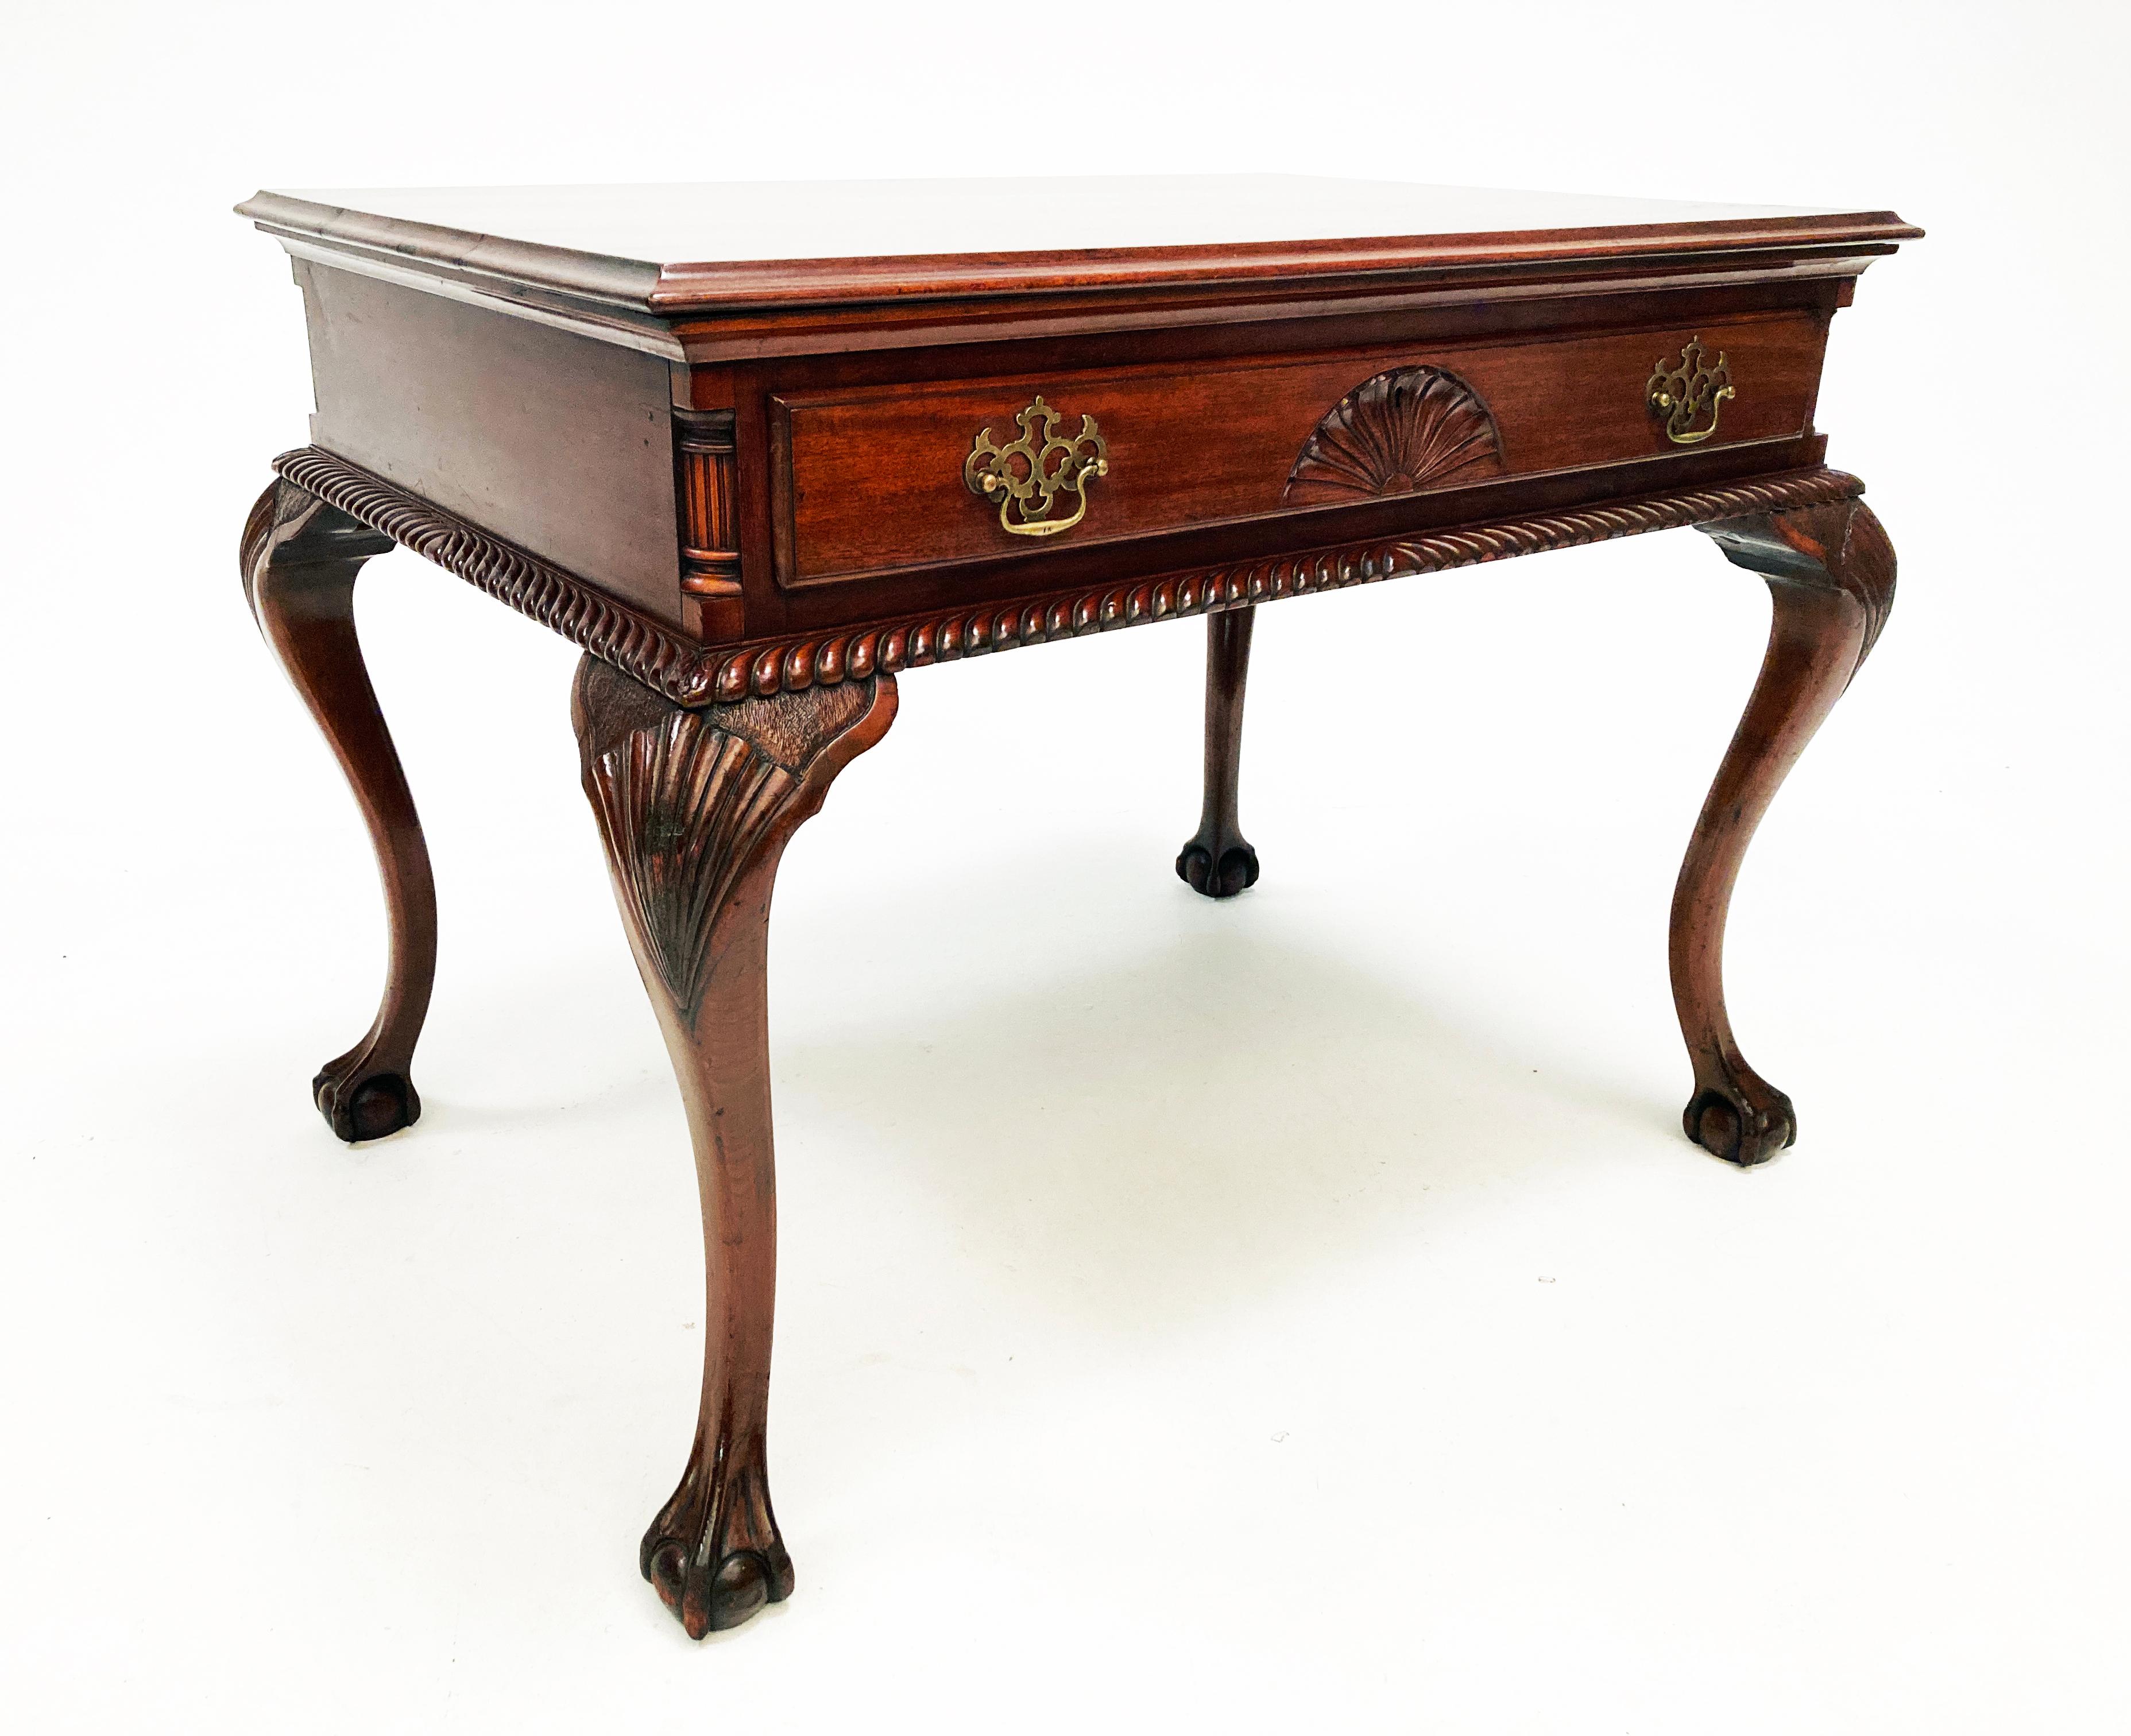 Für das anspruchsvolle Auge ist dieser Tisch ein erstaunliches Beispiel für schönes englisches Chippendale-Design mit beispielhafter Handwerkskunst aus dem 19. Von kunstvoll handgeschnitzten Cabriole-Beinen bis hin zu exquisiten Sockeldetails, die